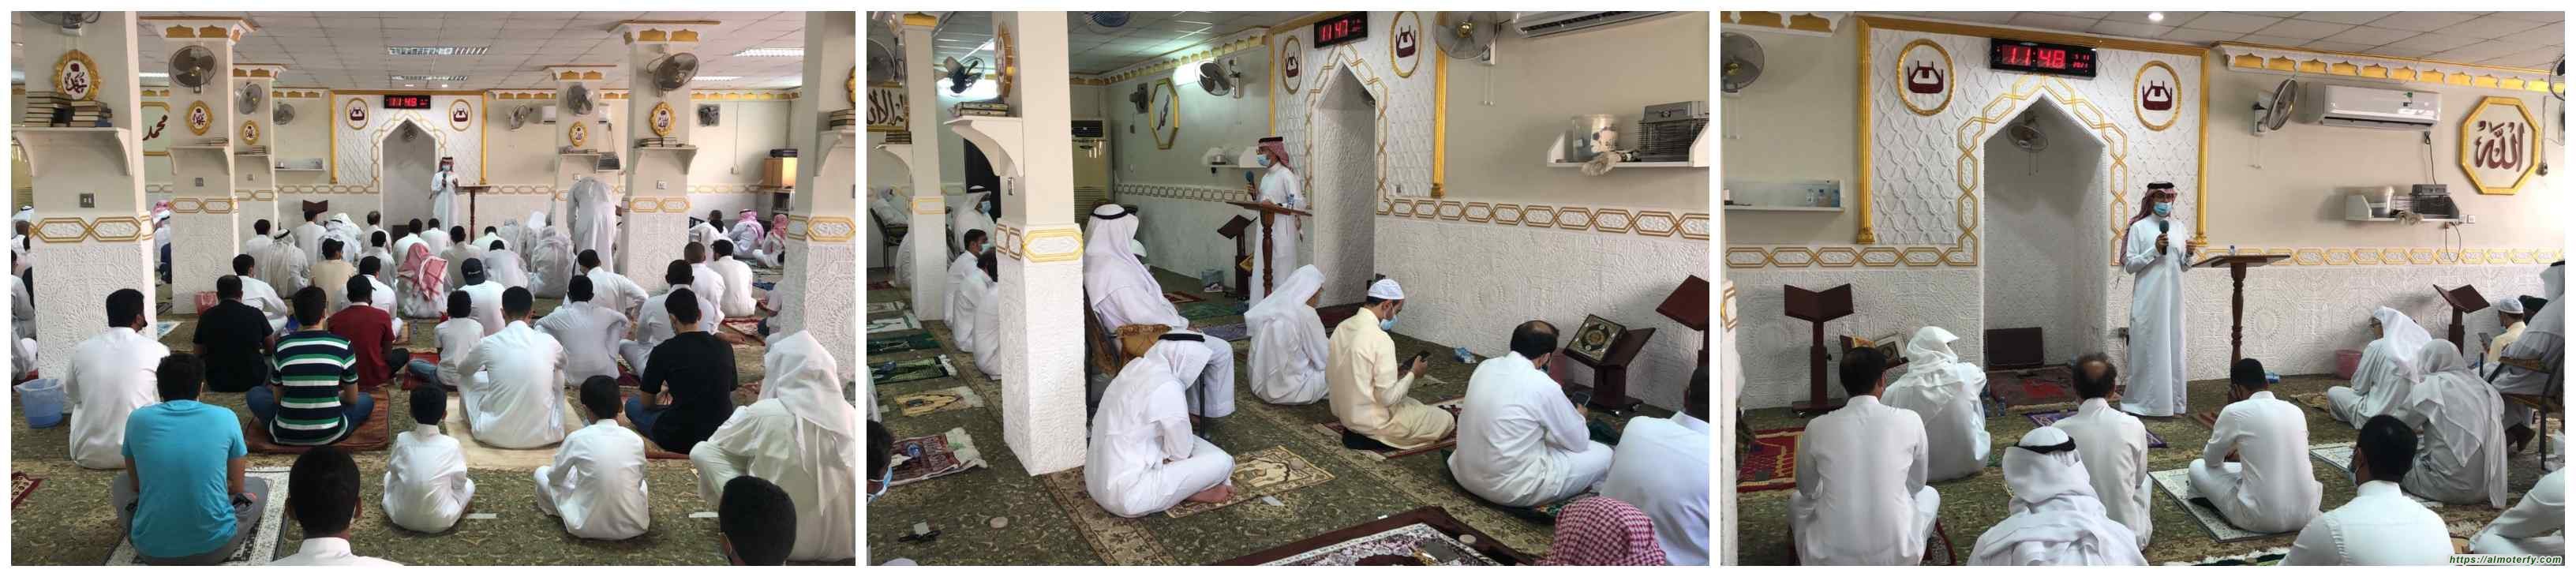 التطعيمات الموسمية للدكتور ناصر العباد في مسجد الامام علي بالمطيرفي